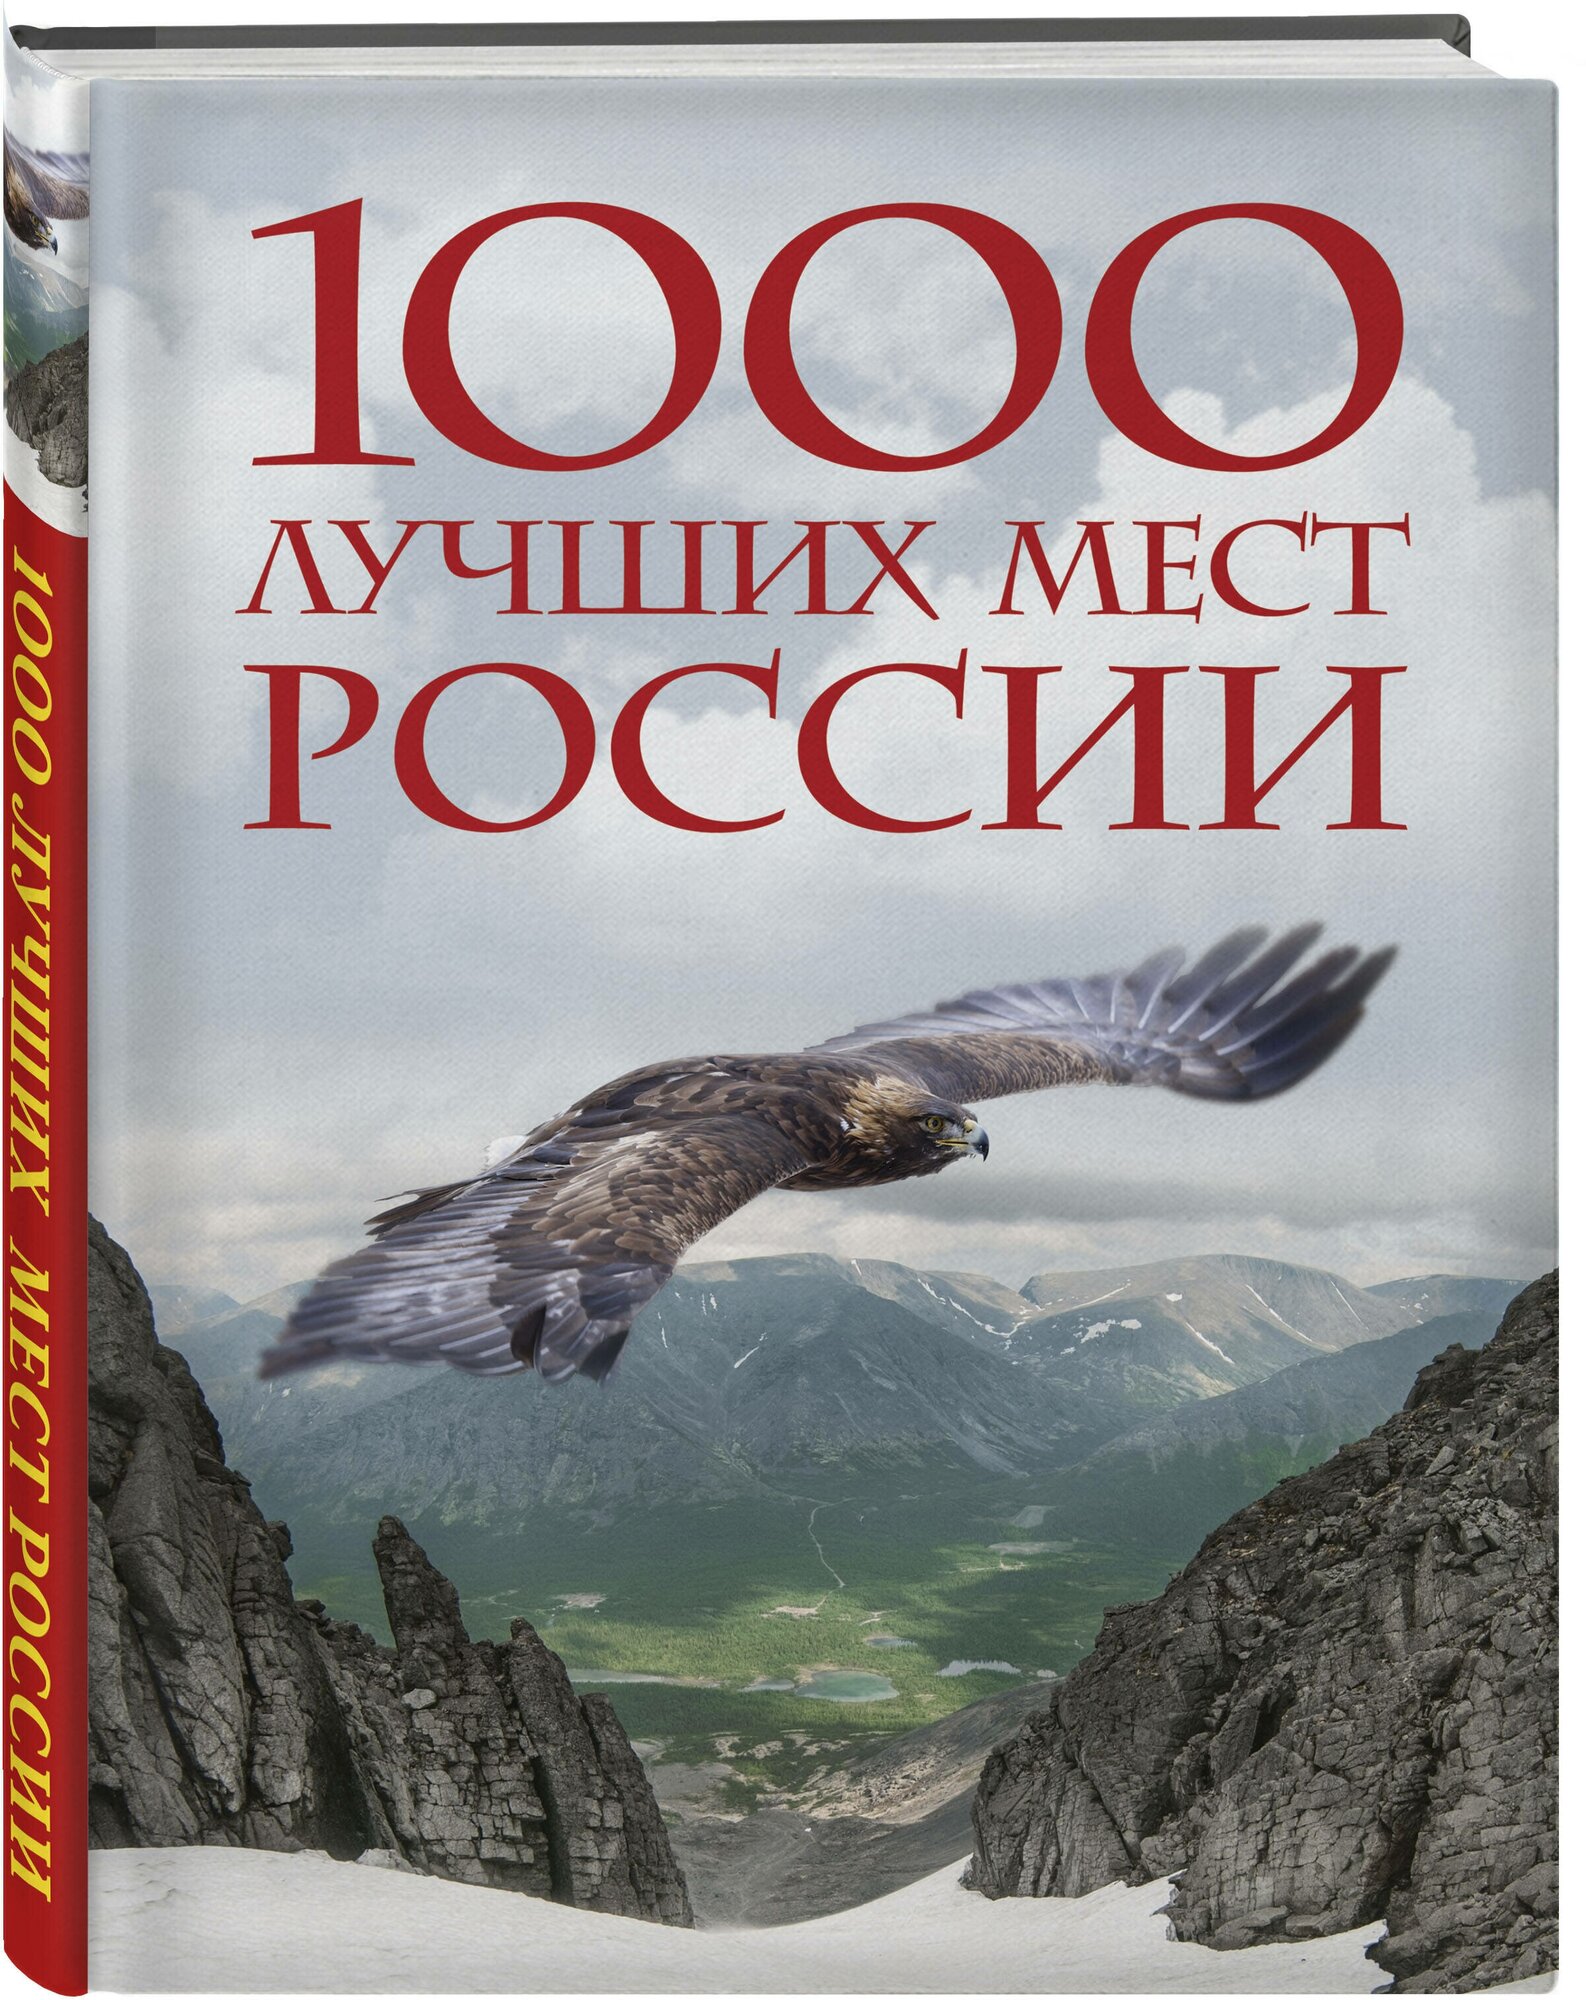 1000 лучших мест России, которые нужно увидеть за свою жизнь. 4-е издание